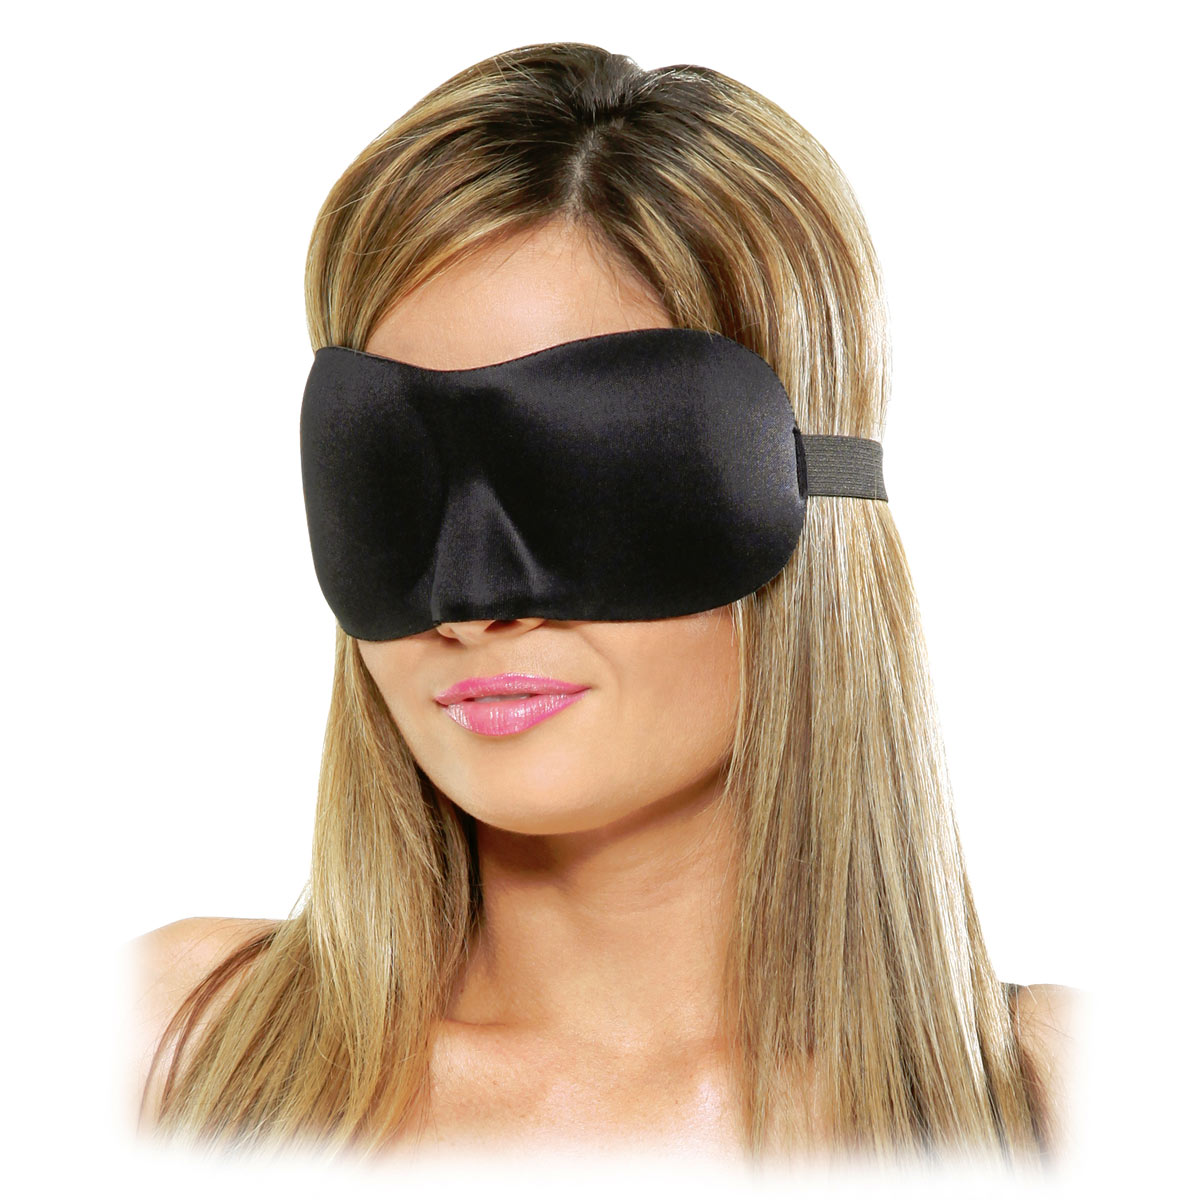 Черная маска на глаза, изготовленная их мягкого плотного материала. Имеет выемку для носа, что позволяет маске удобно сидеть на лице.  Крепится на резинке. Ширина - 8,5 см.